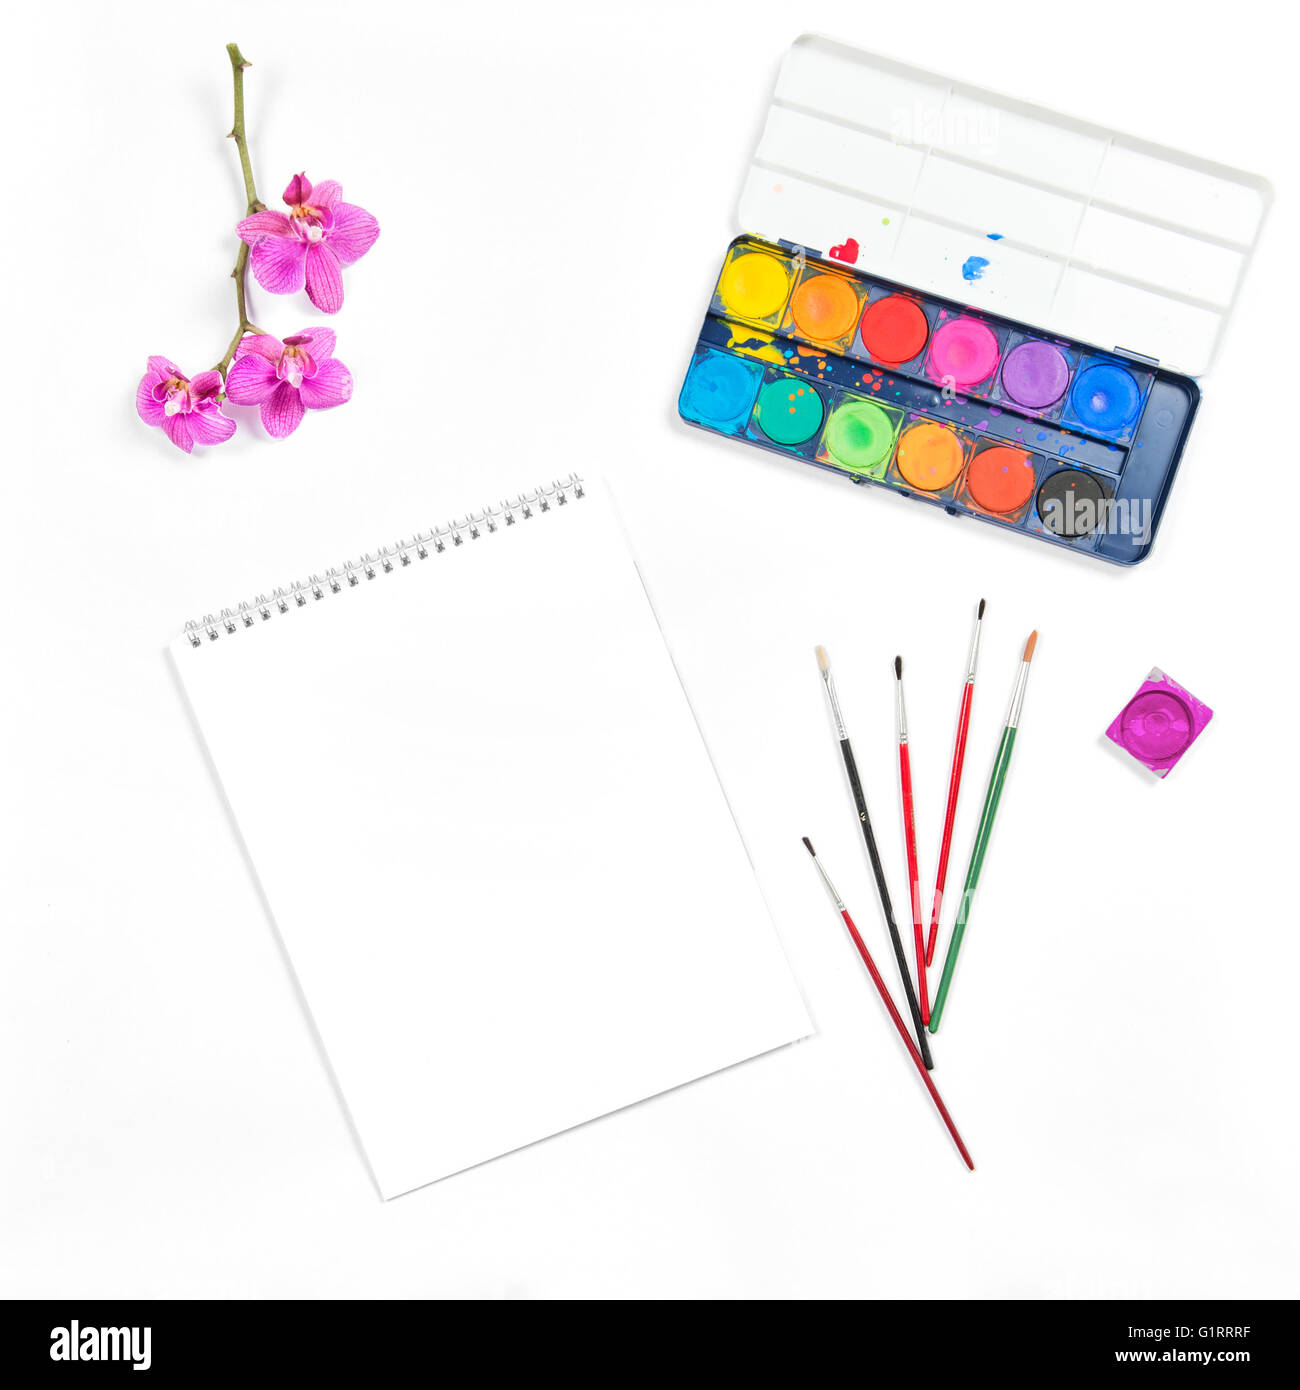 Piatto con laici sketchbook, acquerello, spazzole, carta, orchidea fiore su sfondo bianco Foto Stock